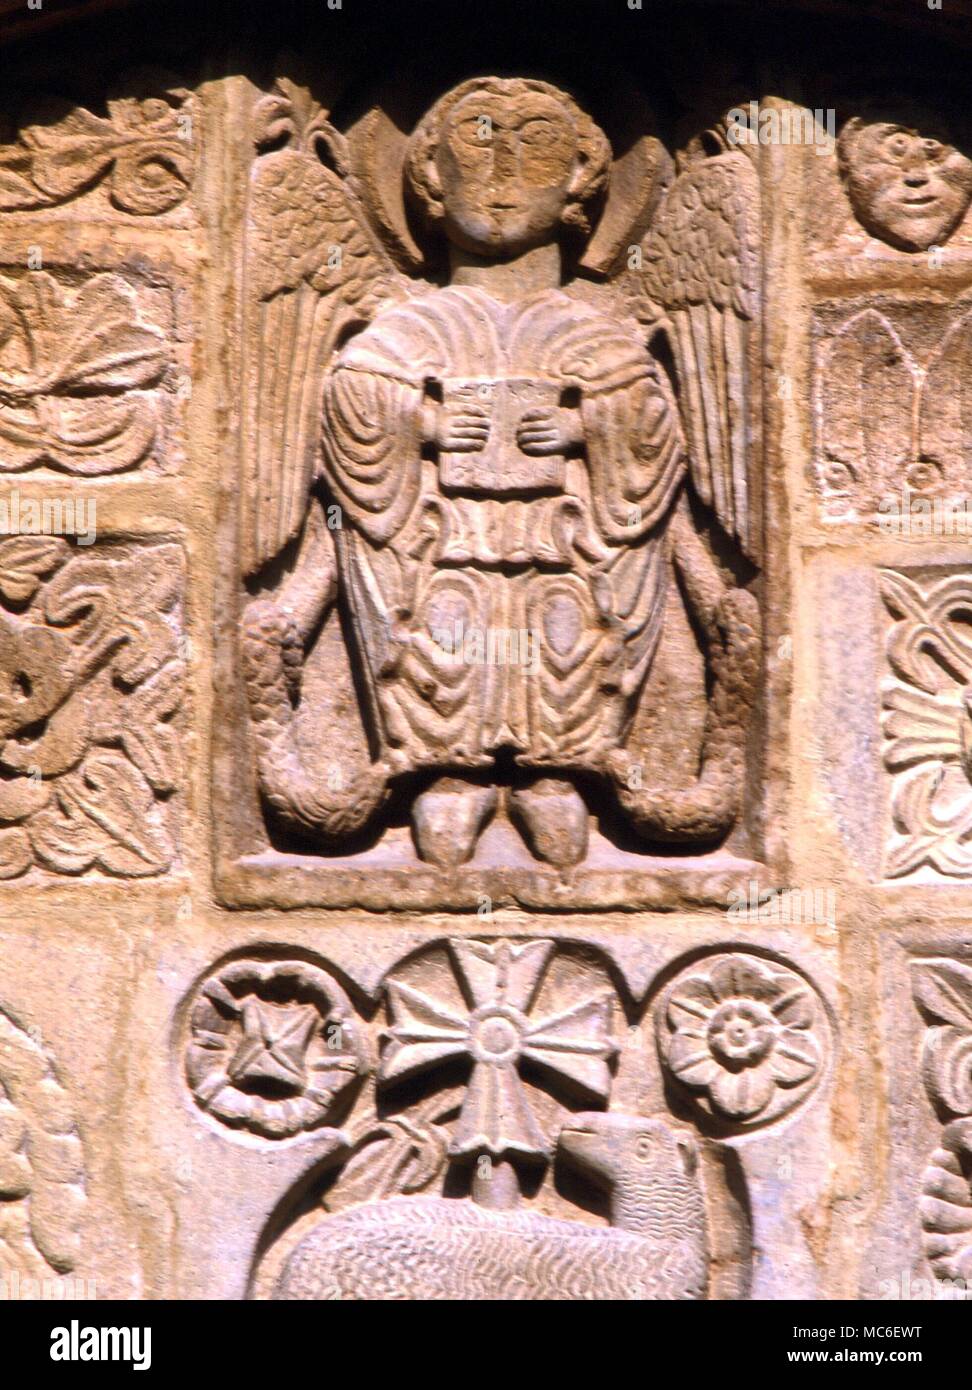 Engel - St. Michael, der Erzengel, und Herrscher über Feuer, auf der Fassade der Kirche St. Michael, Salon, Provence, Frankreich Stockfoto